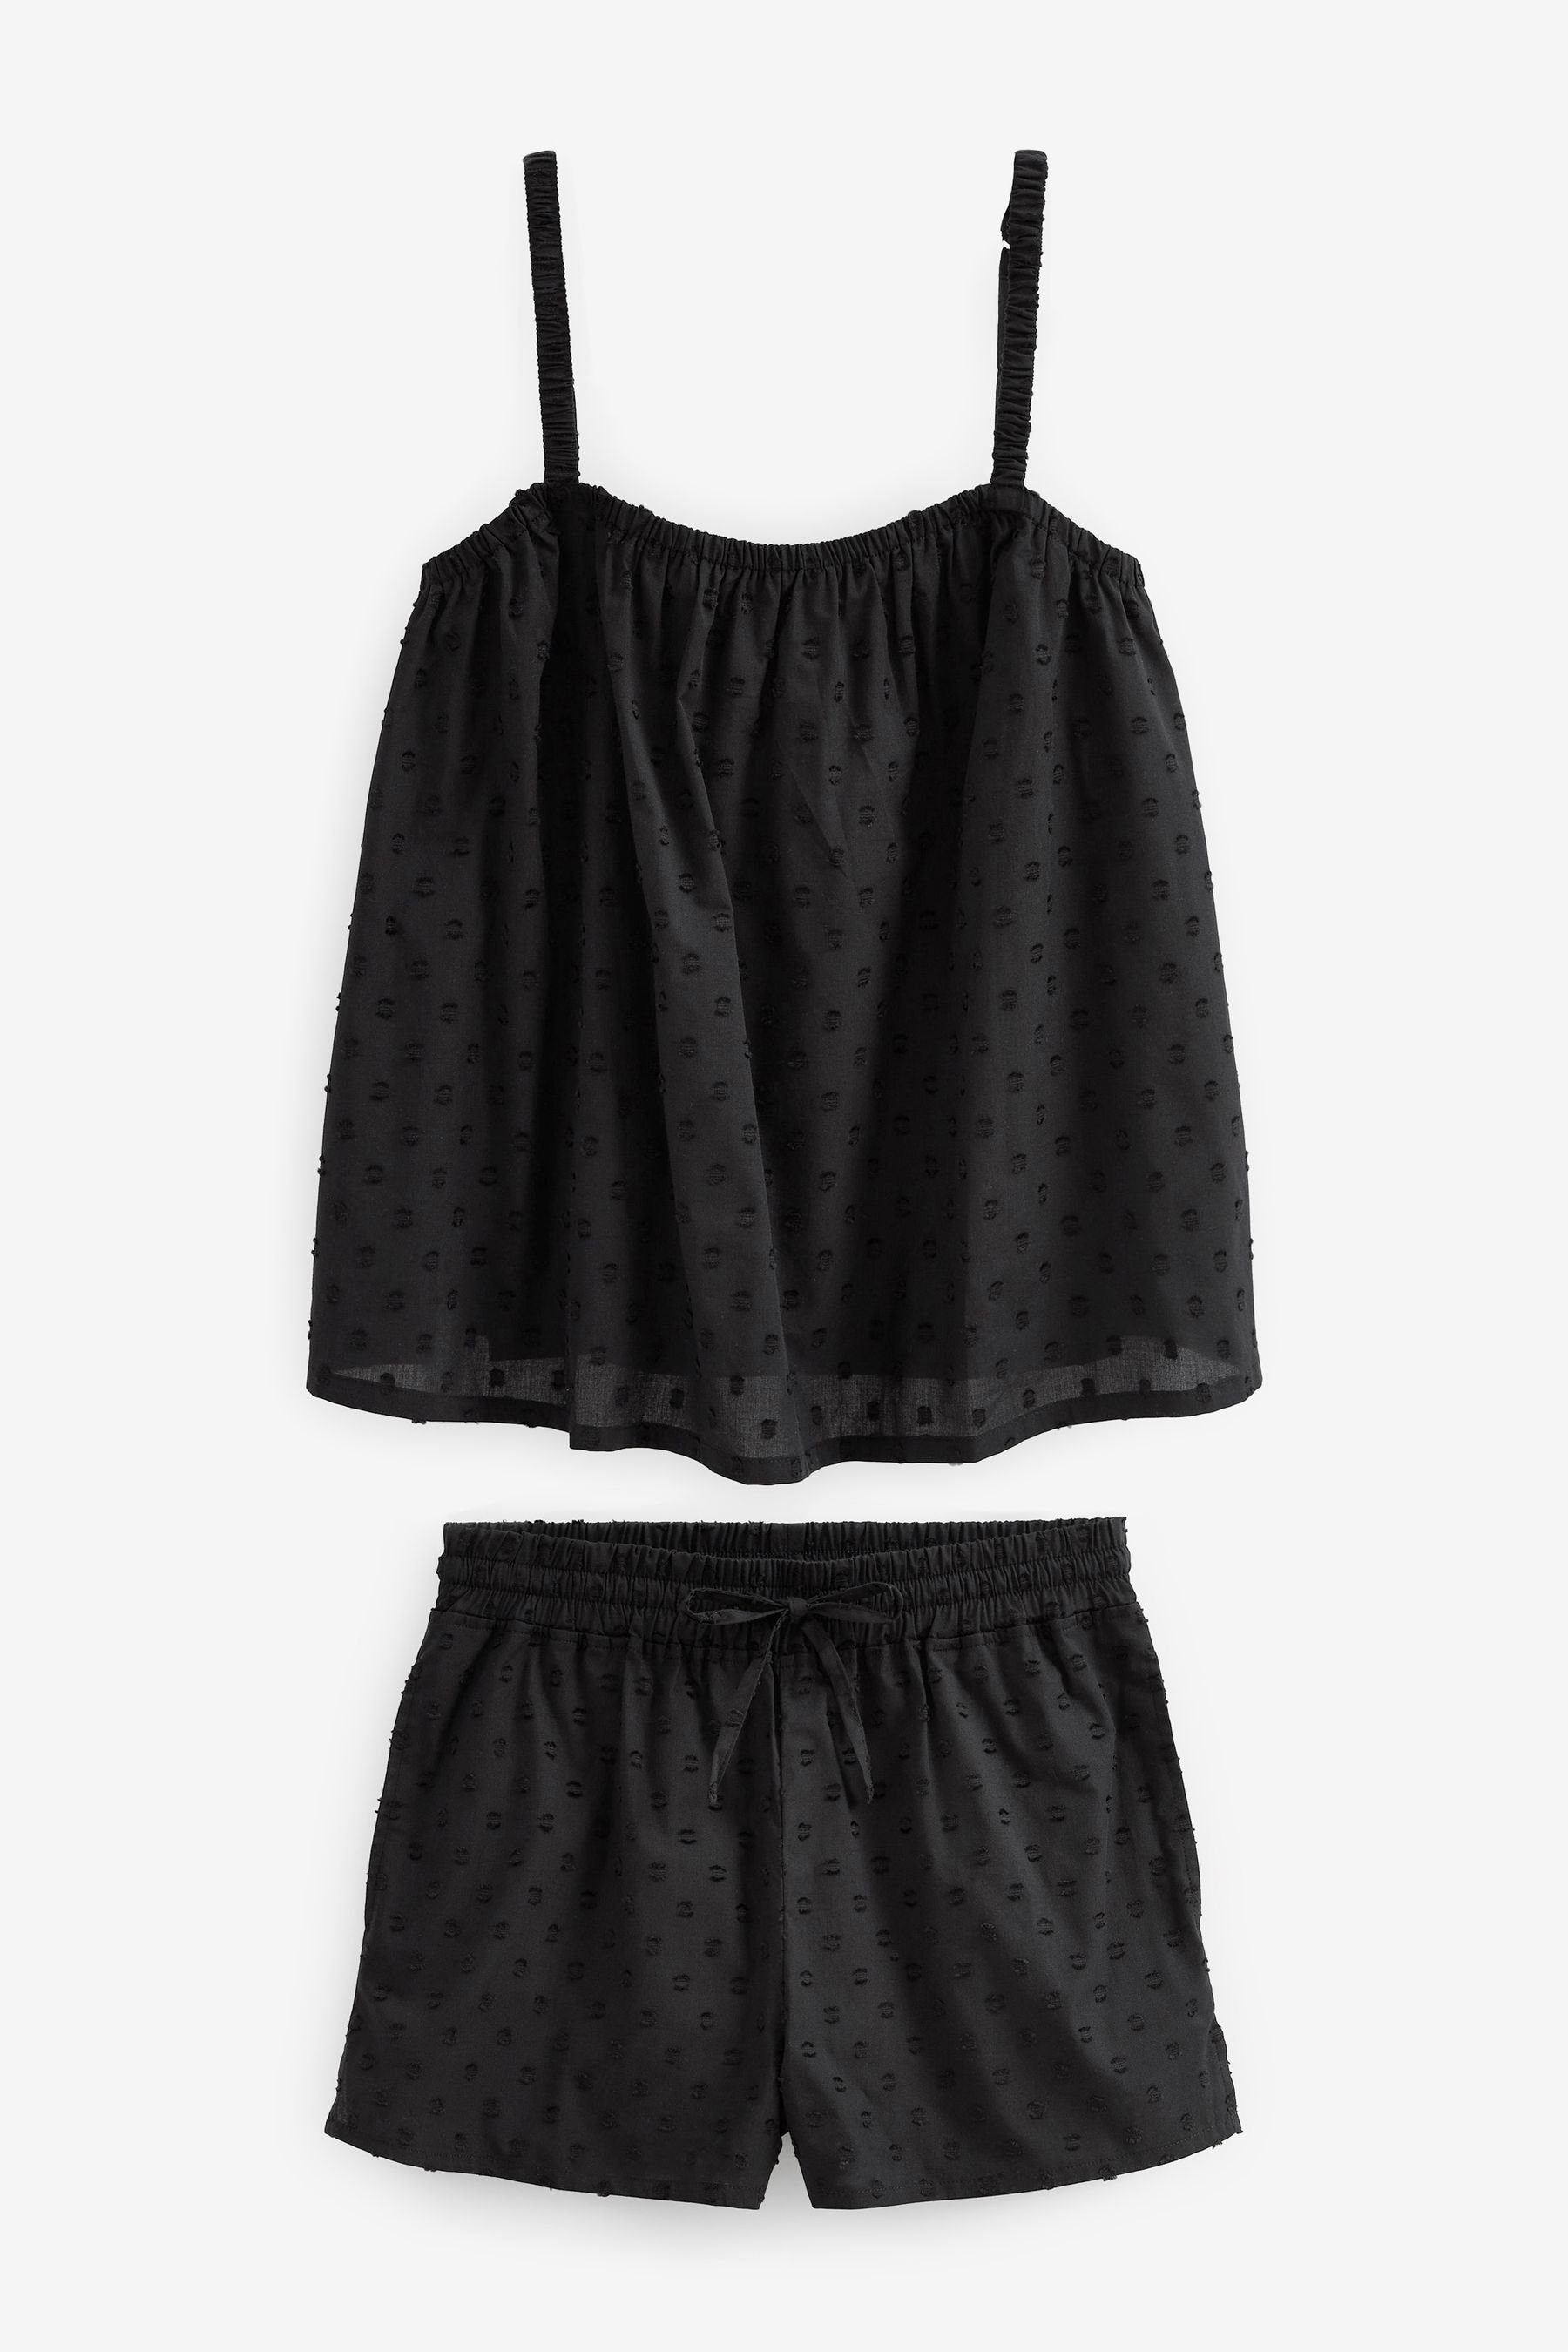 Next Pyjama Baumwoll-Schlafanzug mit Trägertop und Shorts (2 tlg) Black